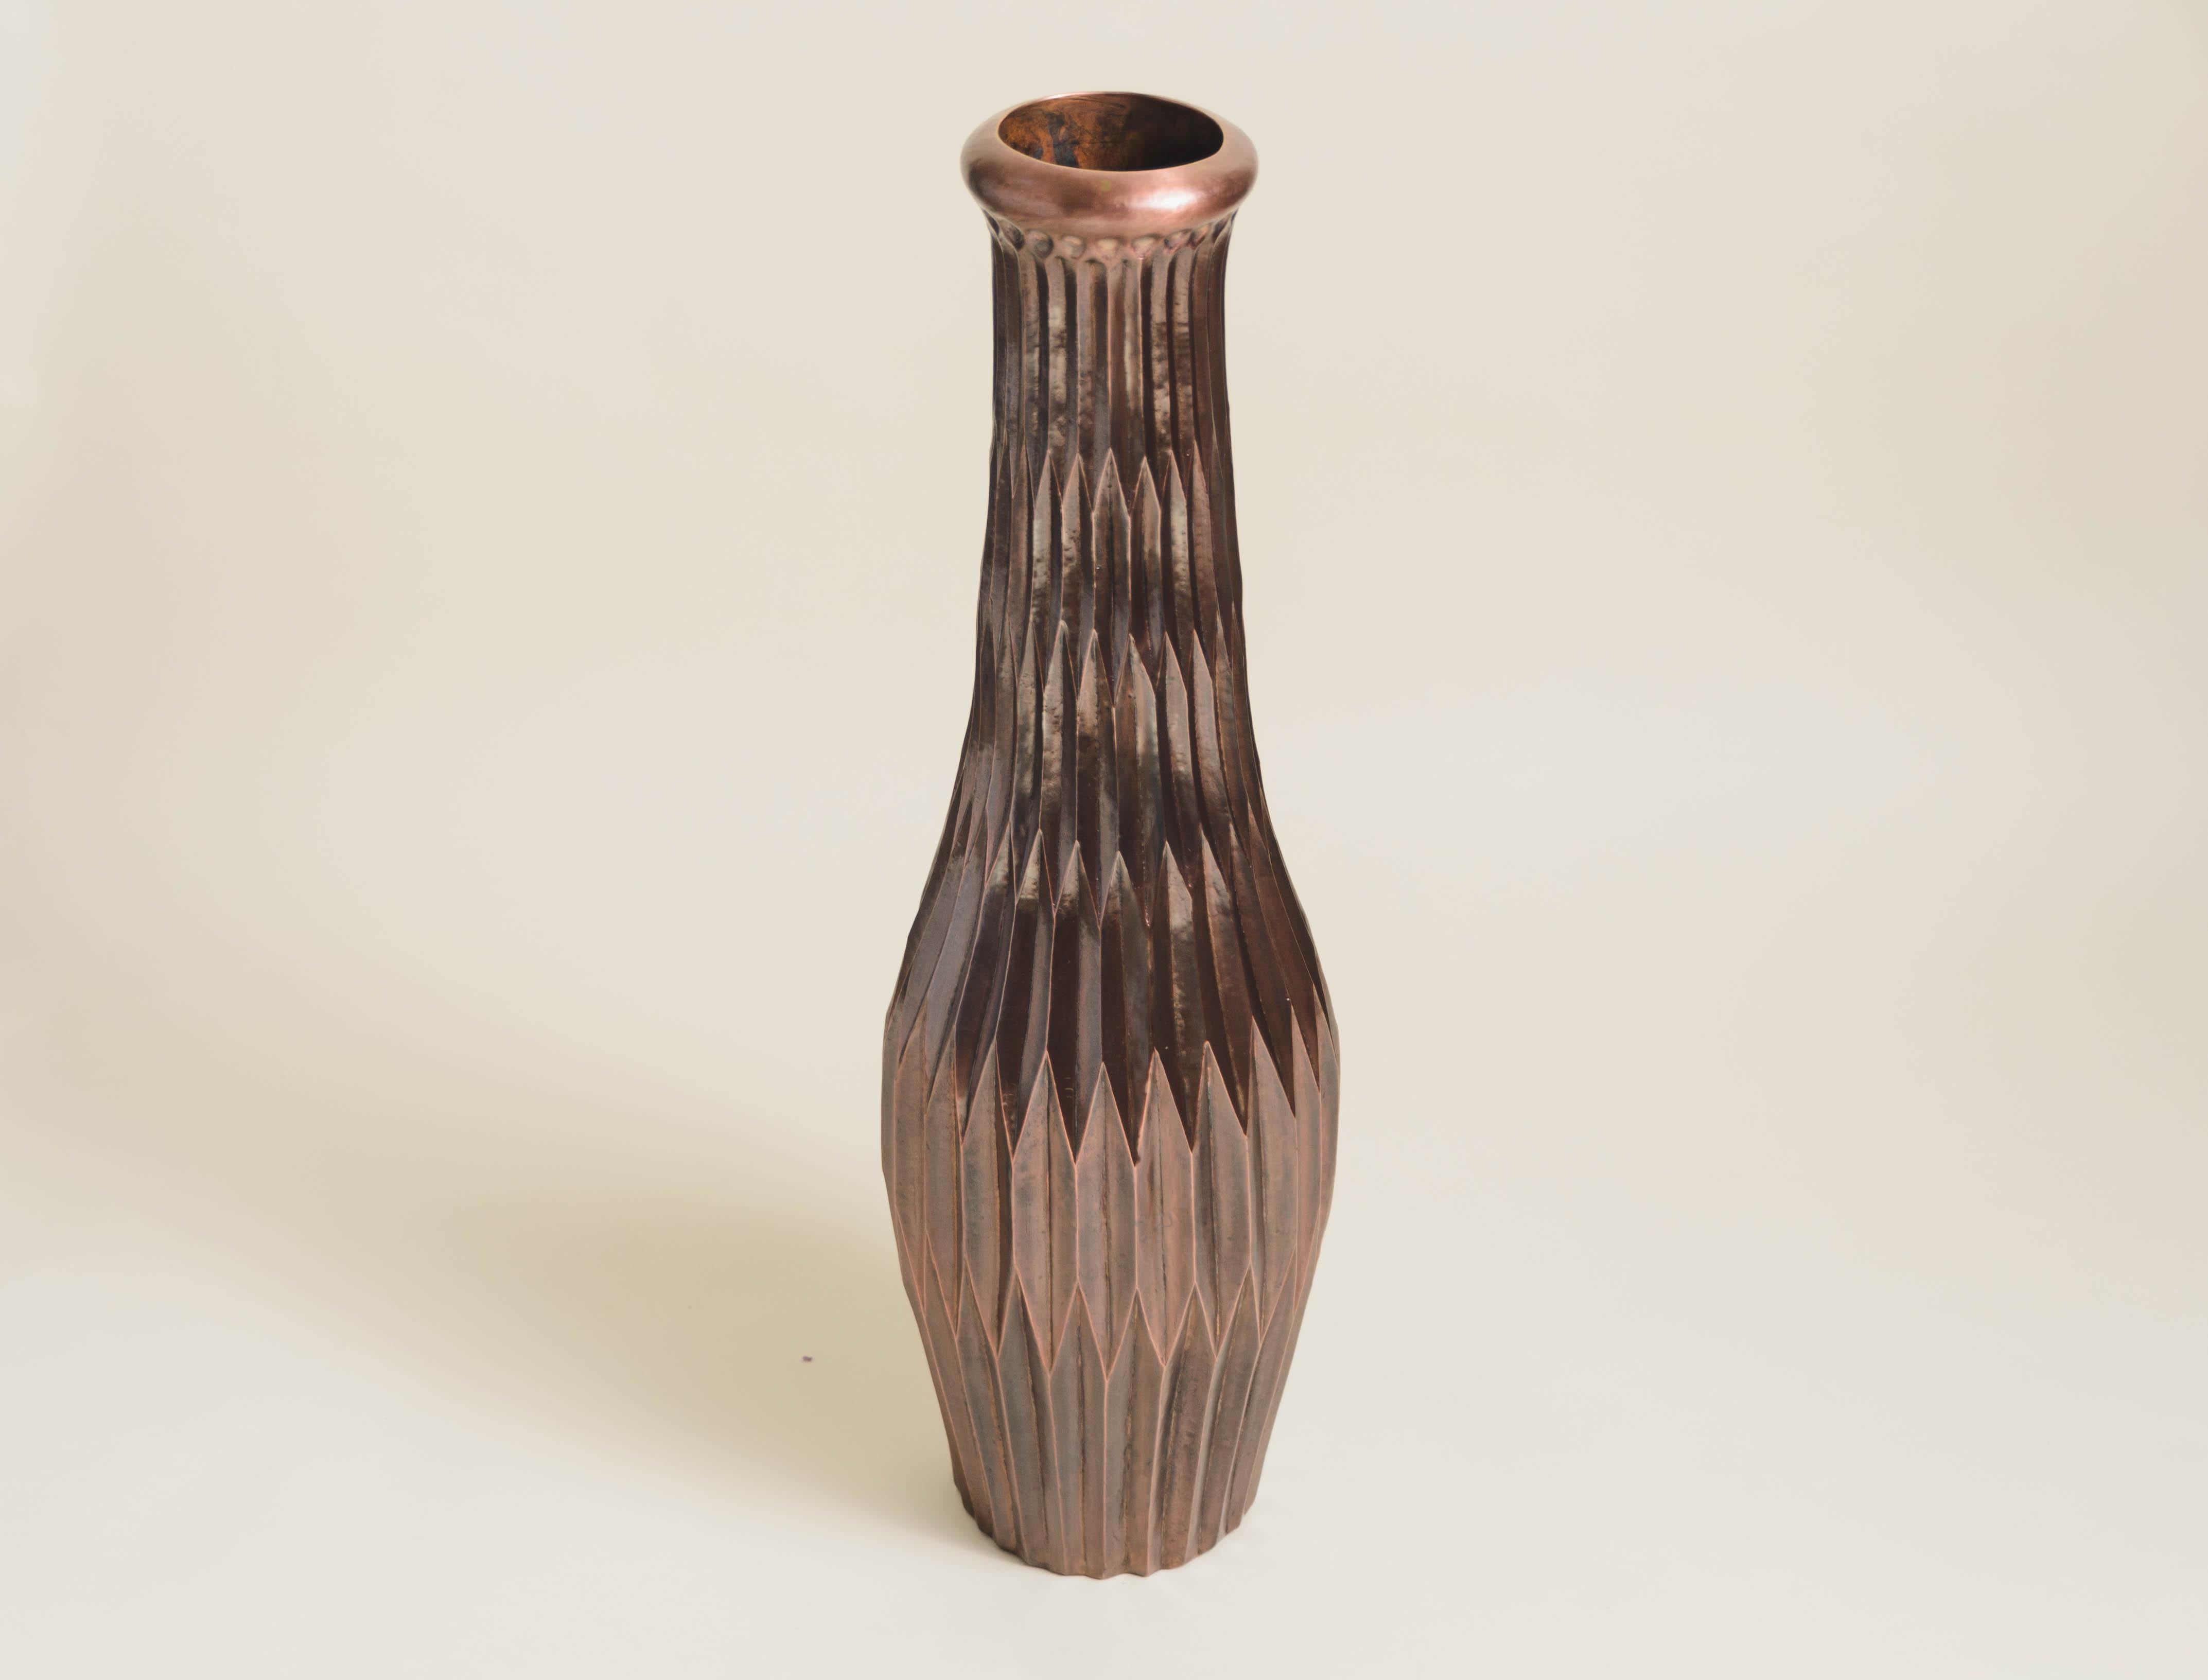 Hohe Laterne Design Vase
Antik-Kupfer
Hand Repoussé
Zeitgenössisch
Limitierte Auflage
Dieses MATERIAL wird mit der Zeit Patina ansetzen. Jedes Stück wird individuell angefertigt und ist einzigartig.

Repoussé ist die traditionelle Kunst, ein